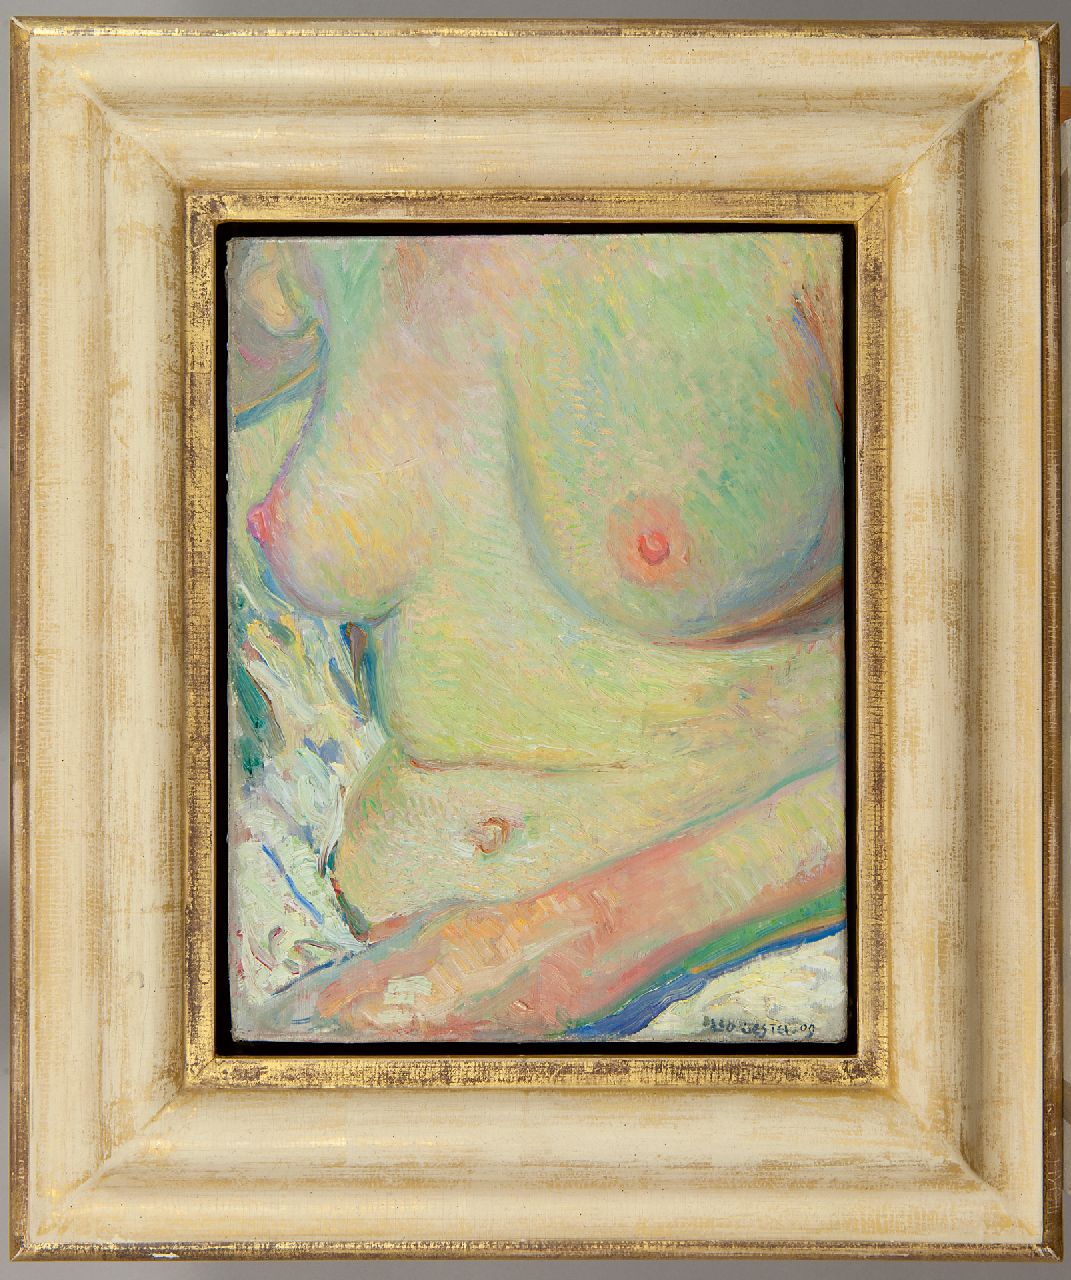 Gestel L.  | Leendert 'Leo' Gestel | Schilderijen te koop aangeboden | Vrouw, zittend in bad, olieverf op doek 33,5 x 25,6 cm, gesigneerd rechtsonder en gedateerd '09